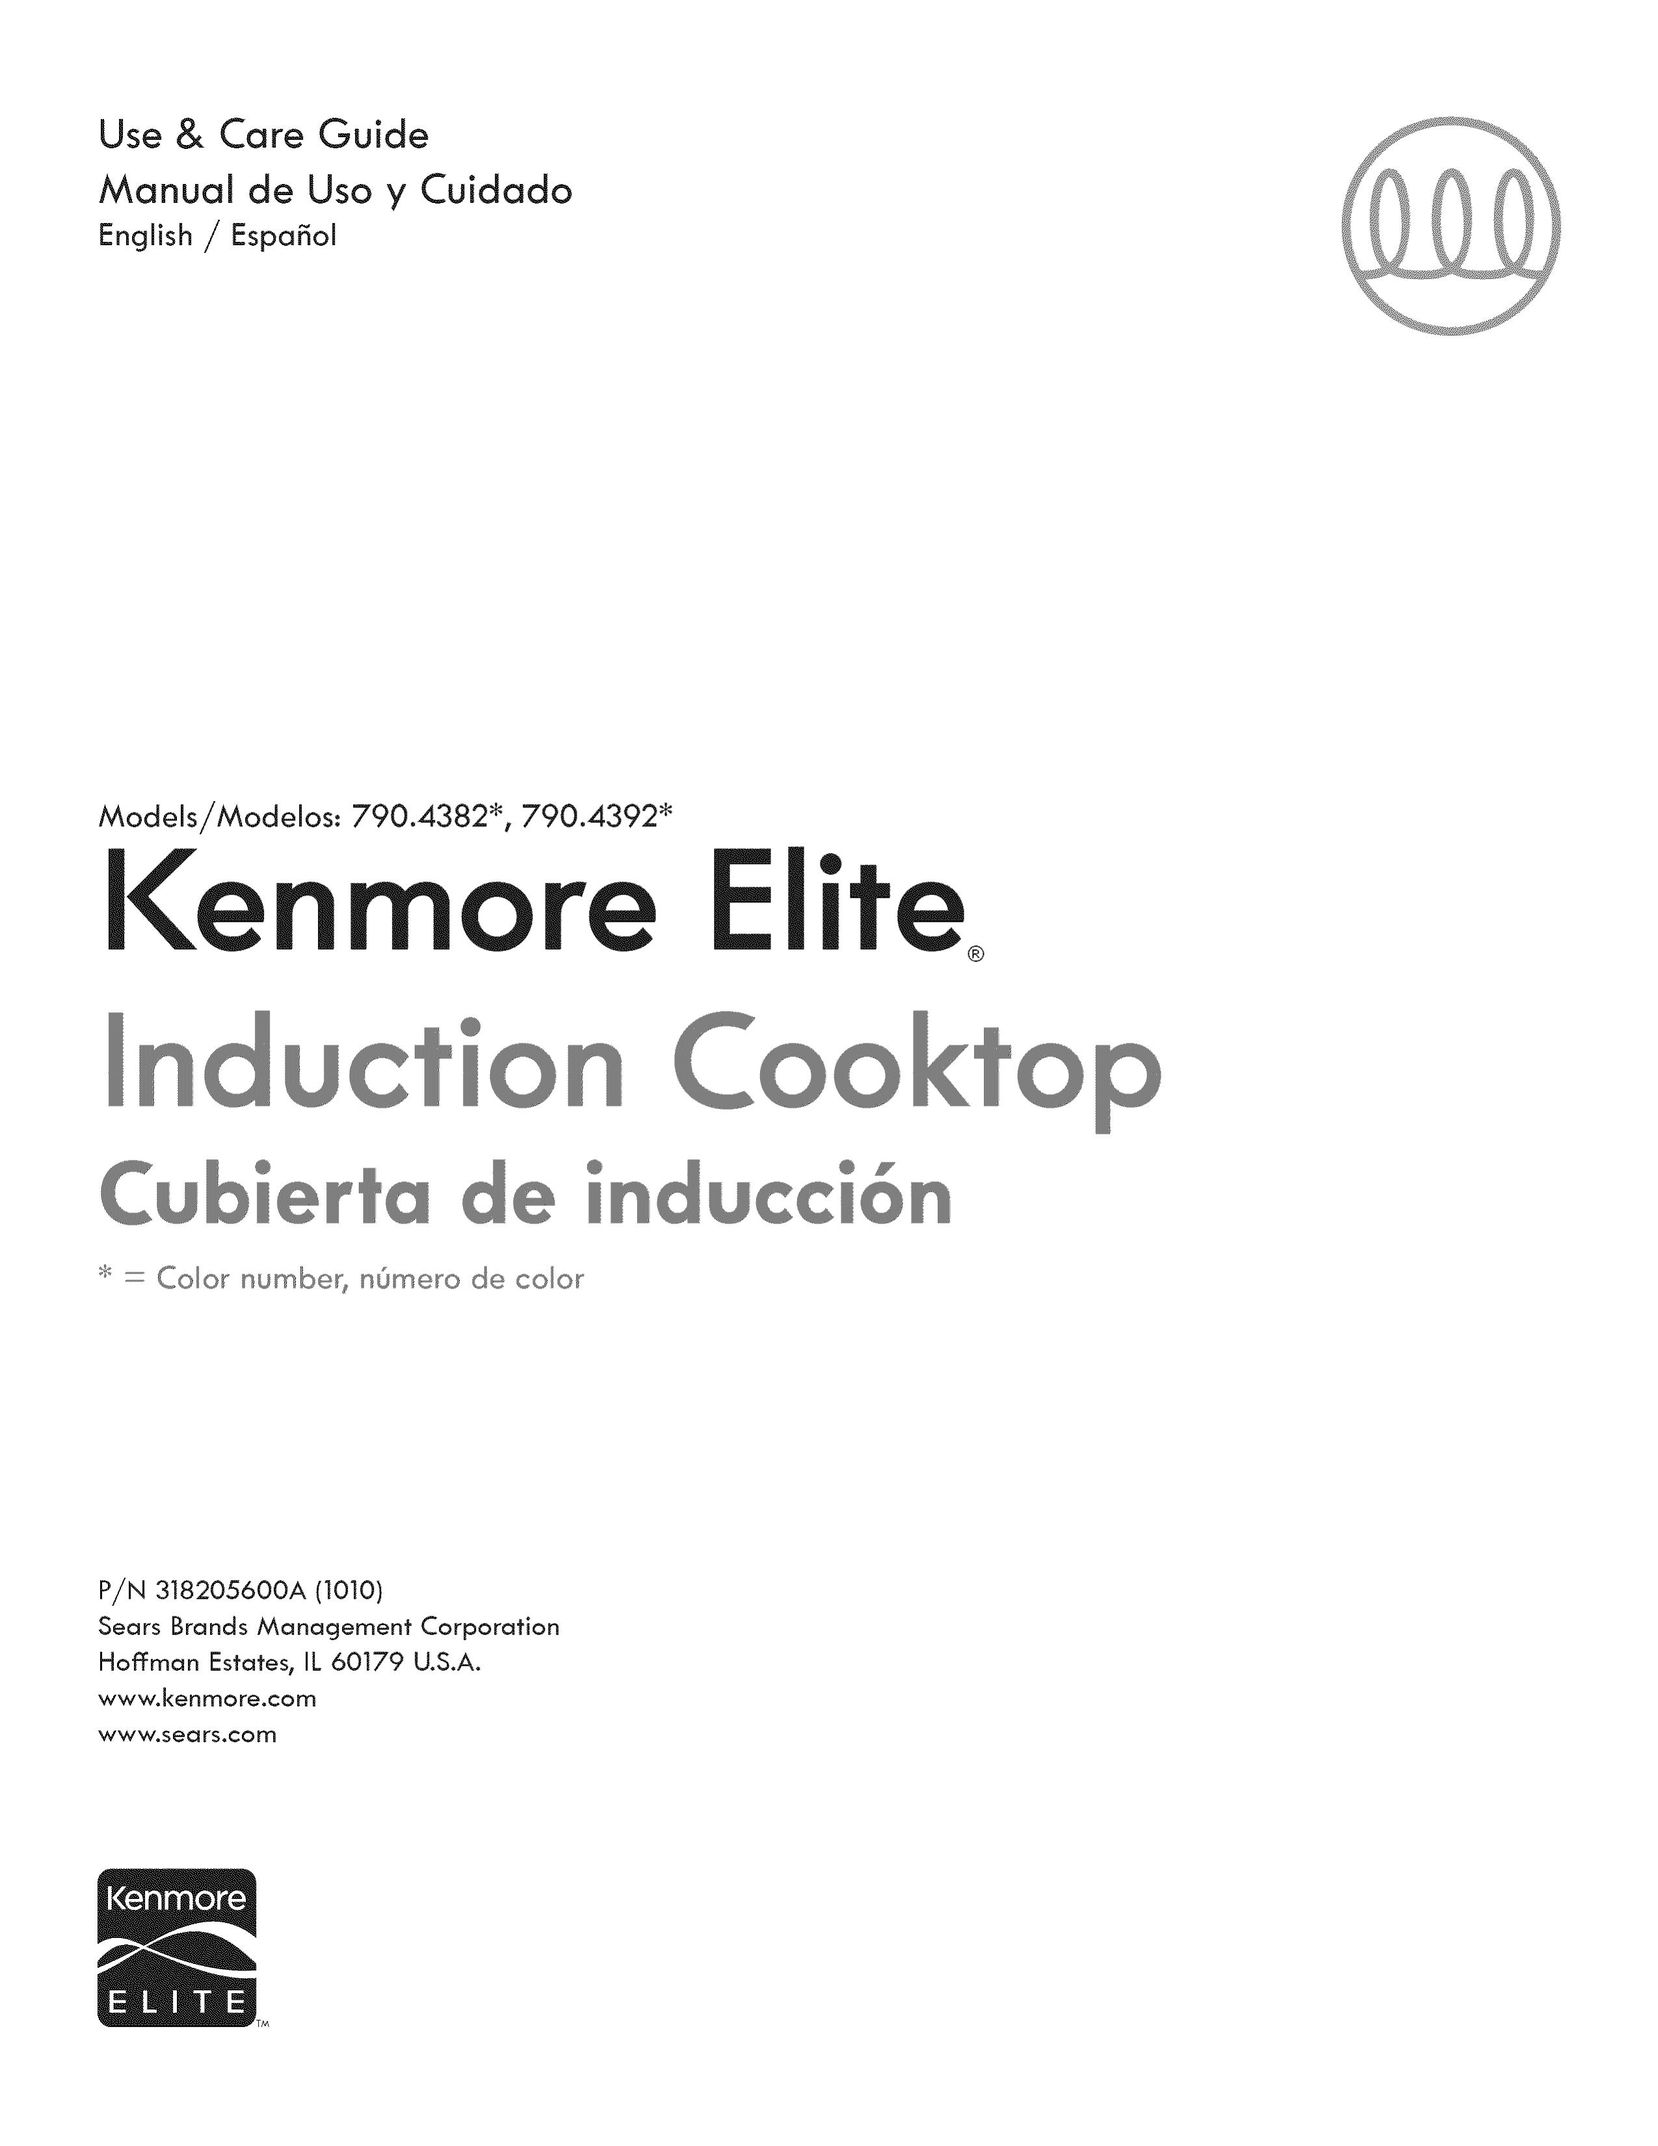 Kenmore 790.4392* Cooktop User Manual